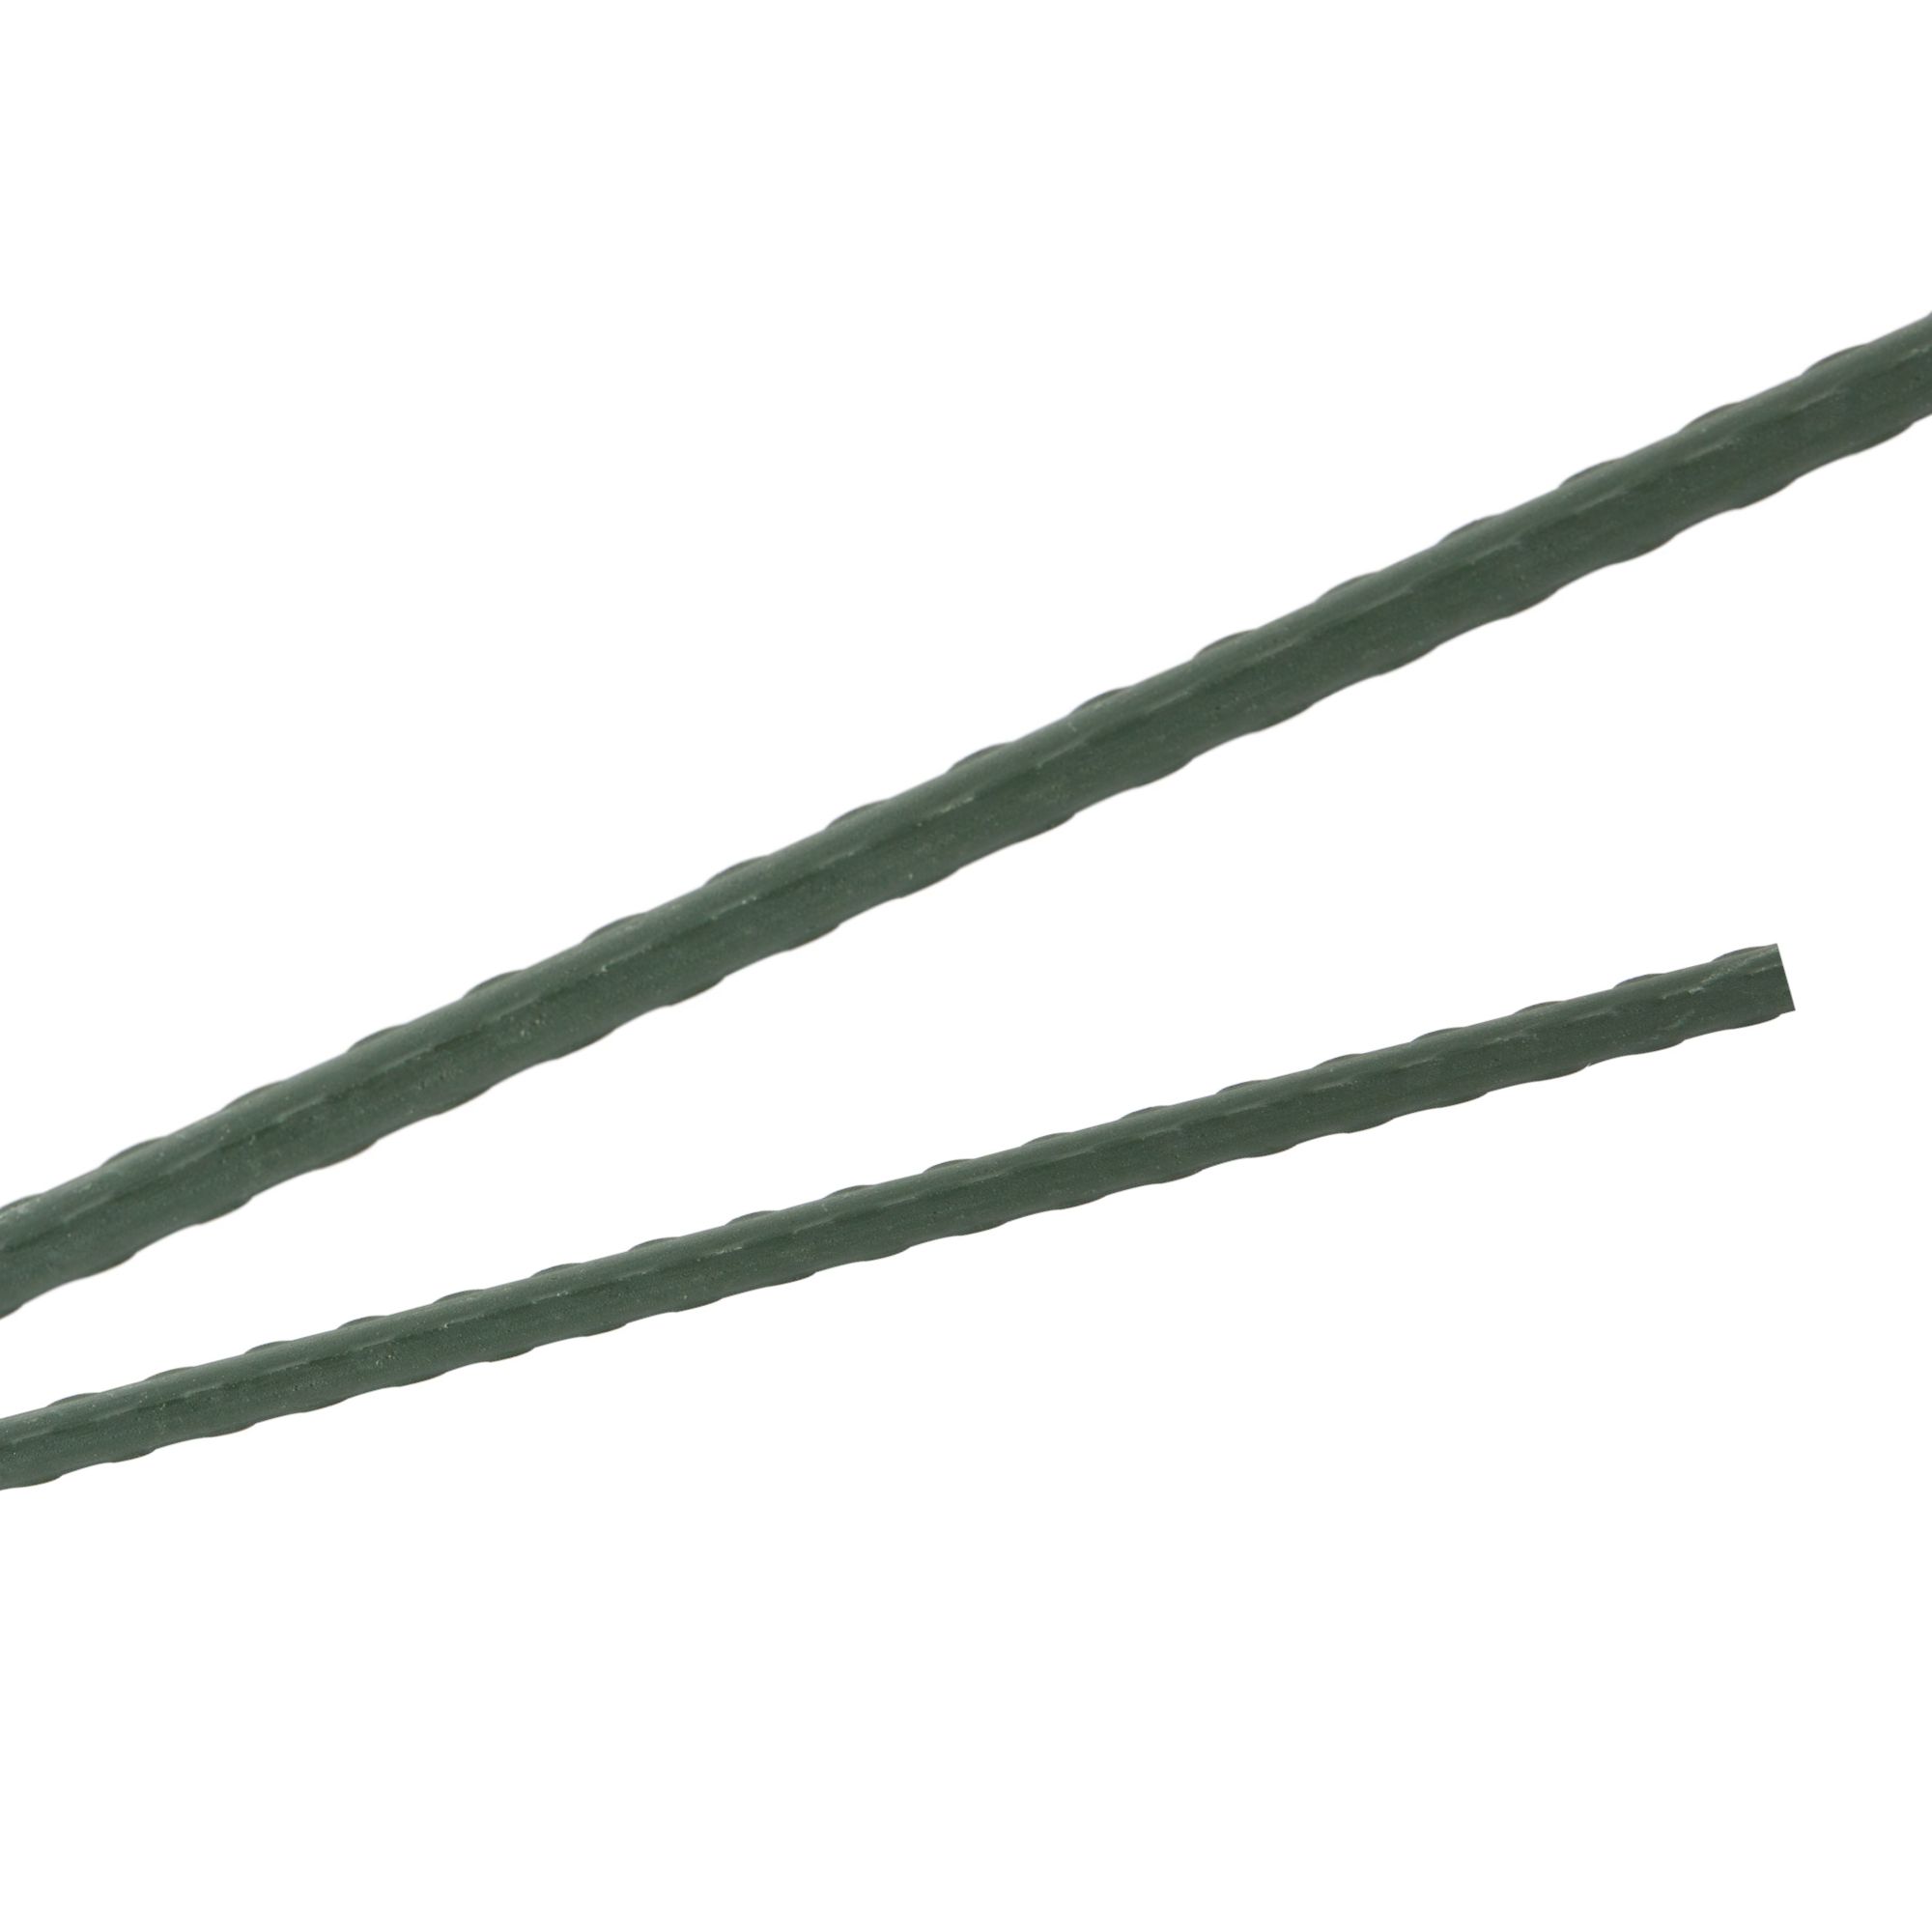 Tyč podpěrná, 20mm, 150cm, kov+PVC, zelená 0.280000 Kg GIGA Sklad20 211769 49